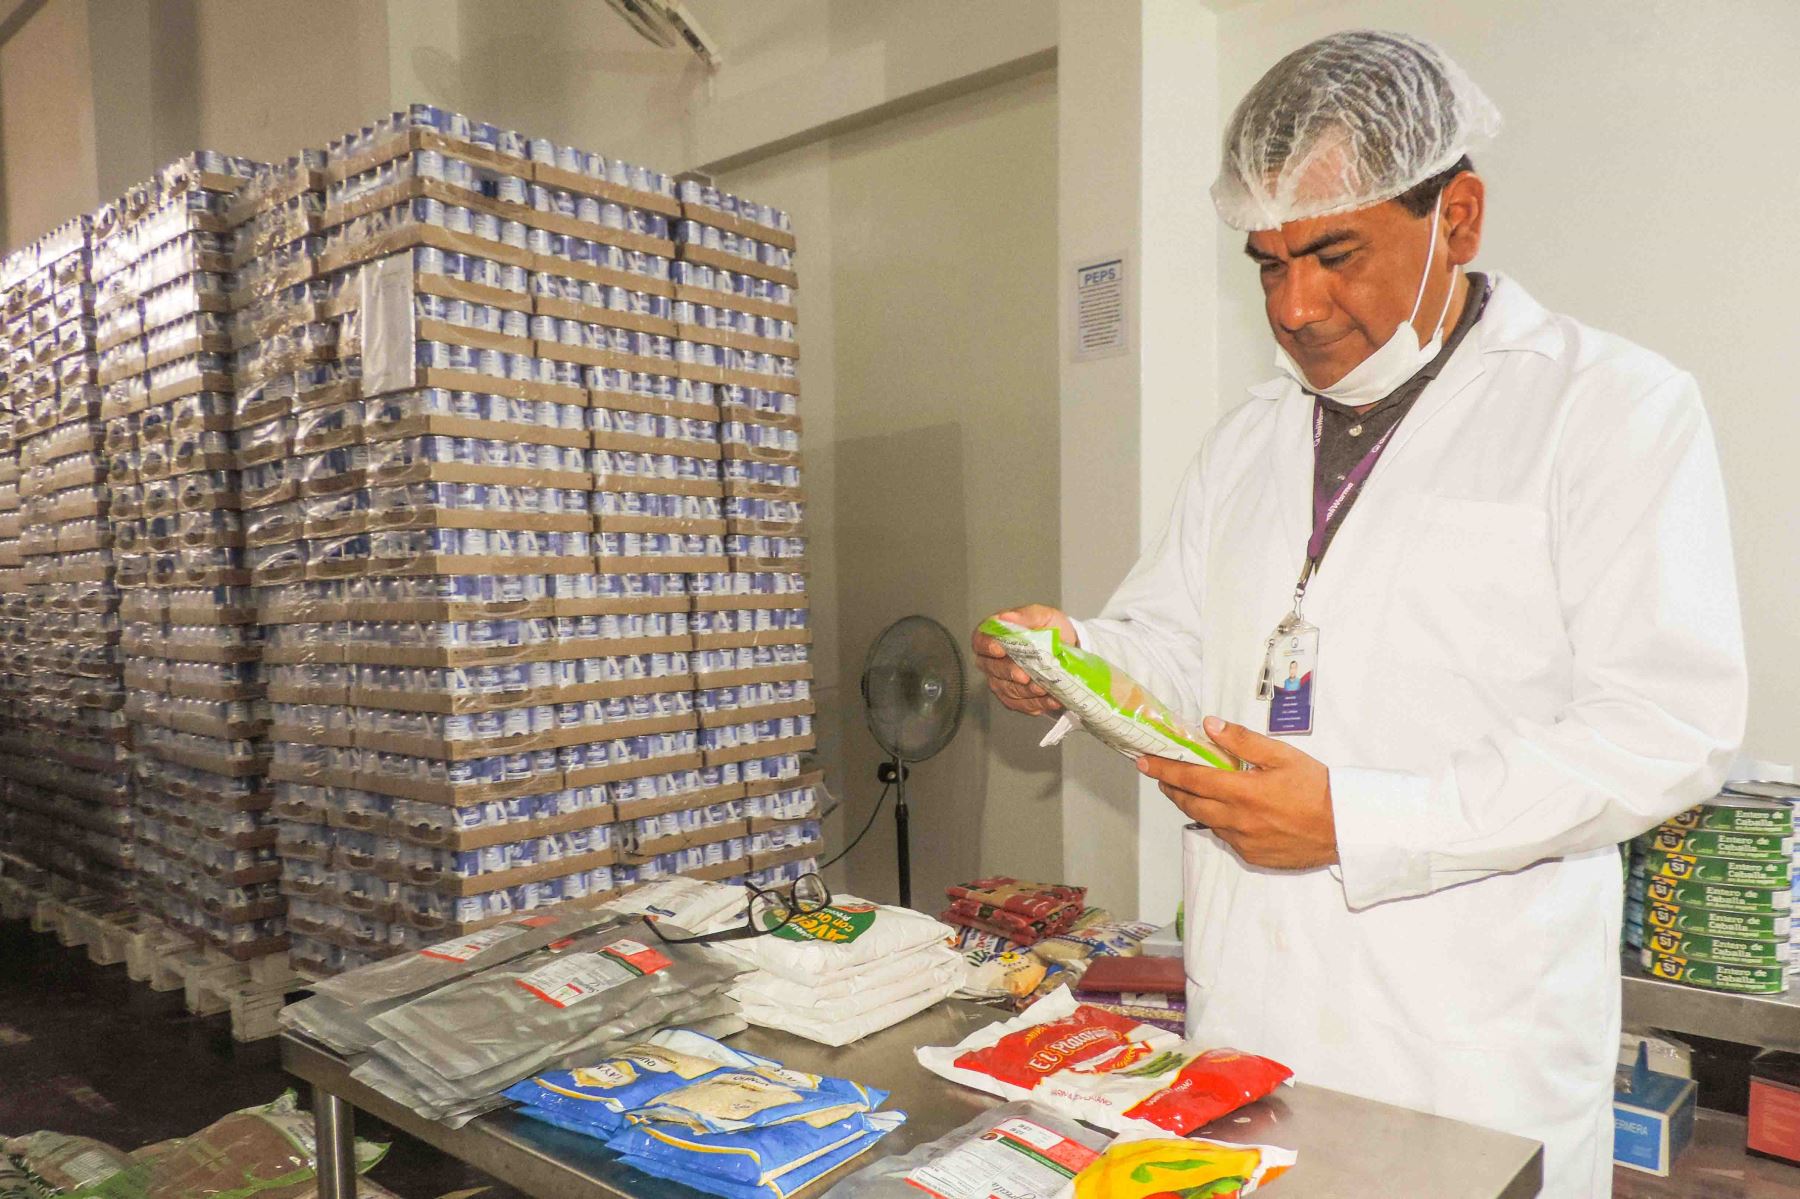 El Programa Nacional de Alimentación Escolar Qali Warma, a través de sus supervisores de plantas y almacenes, verificó en Piura la calidad e inocuidad de los productos que serán distribuidos a las instituciones educativas públicas de esta región del país.